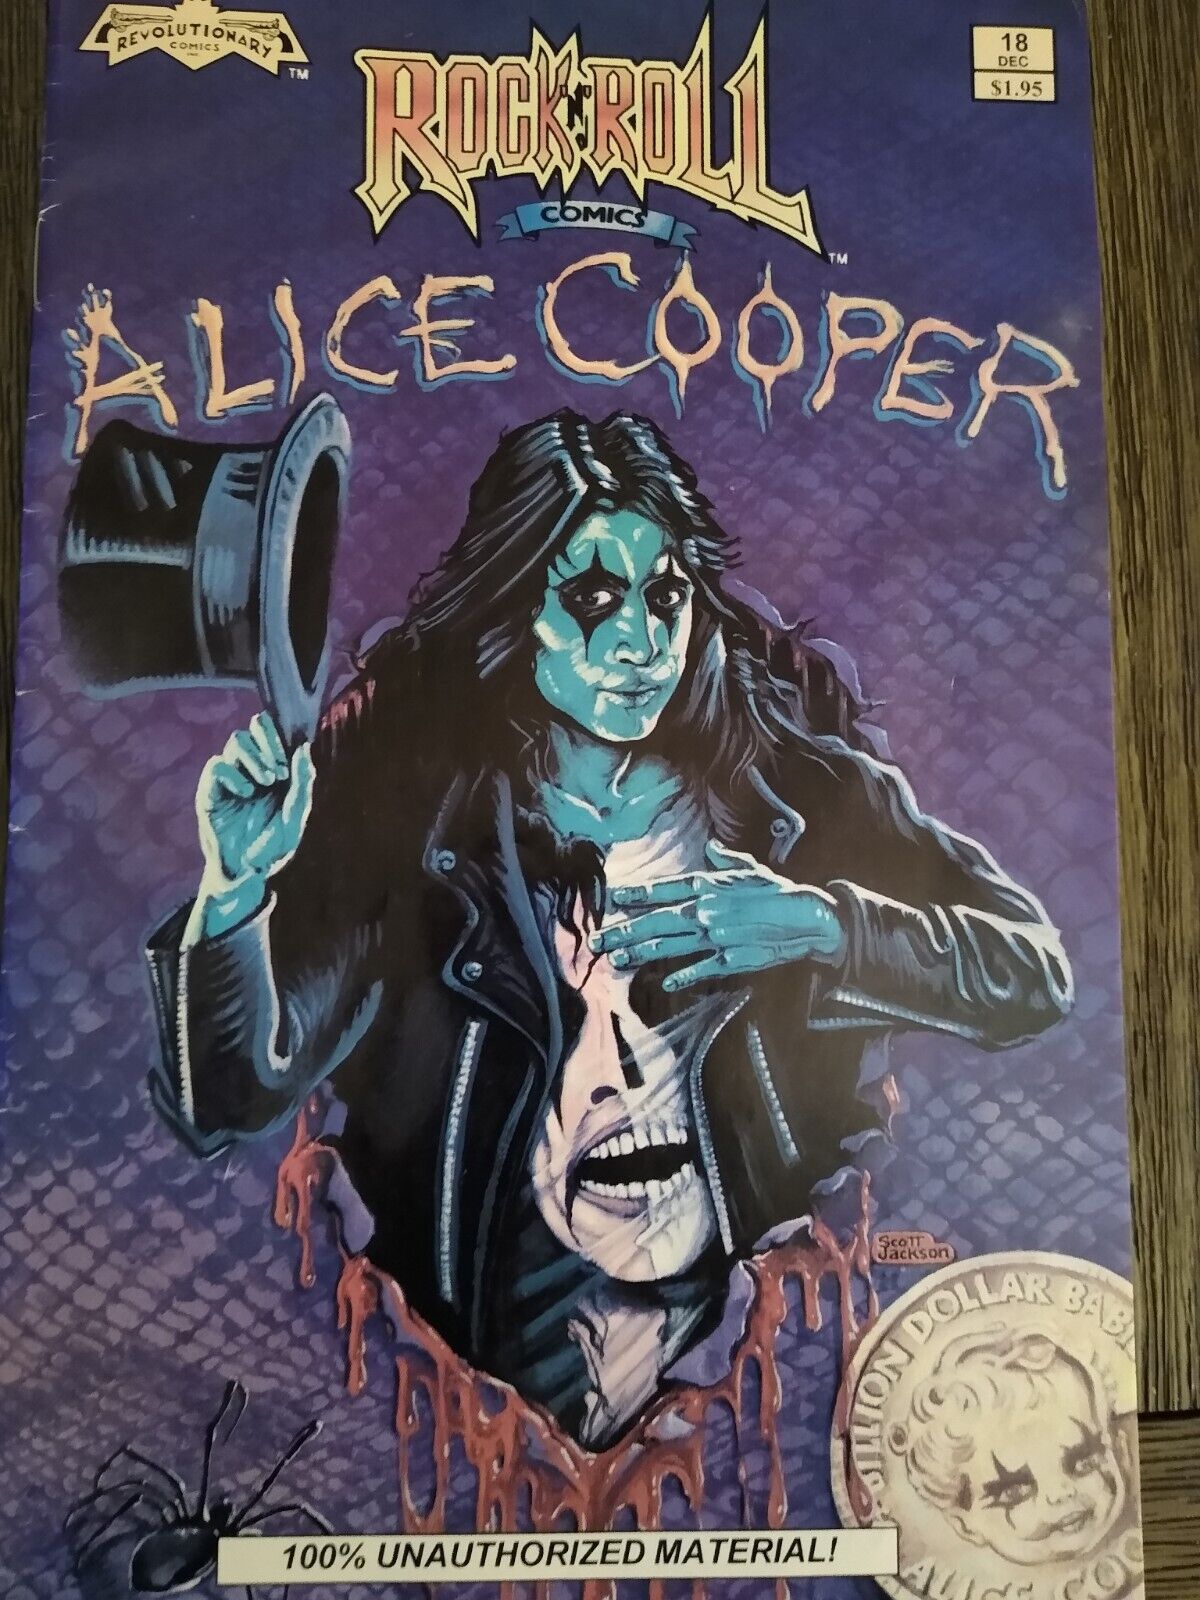 Alice Cooper Comic Book great condition